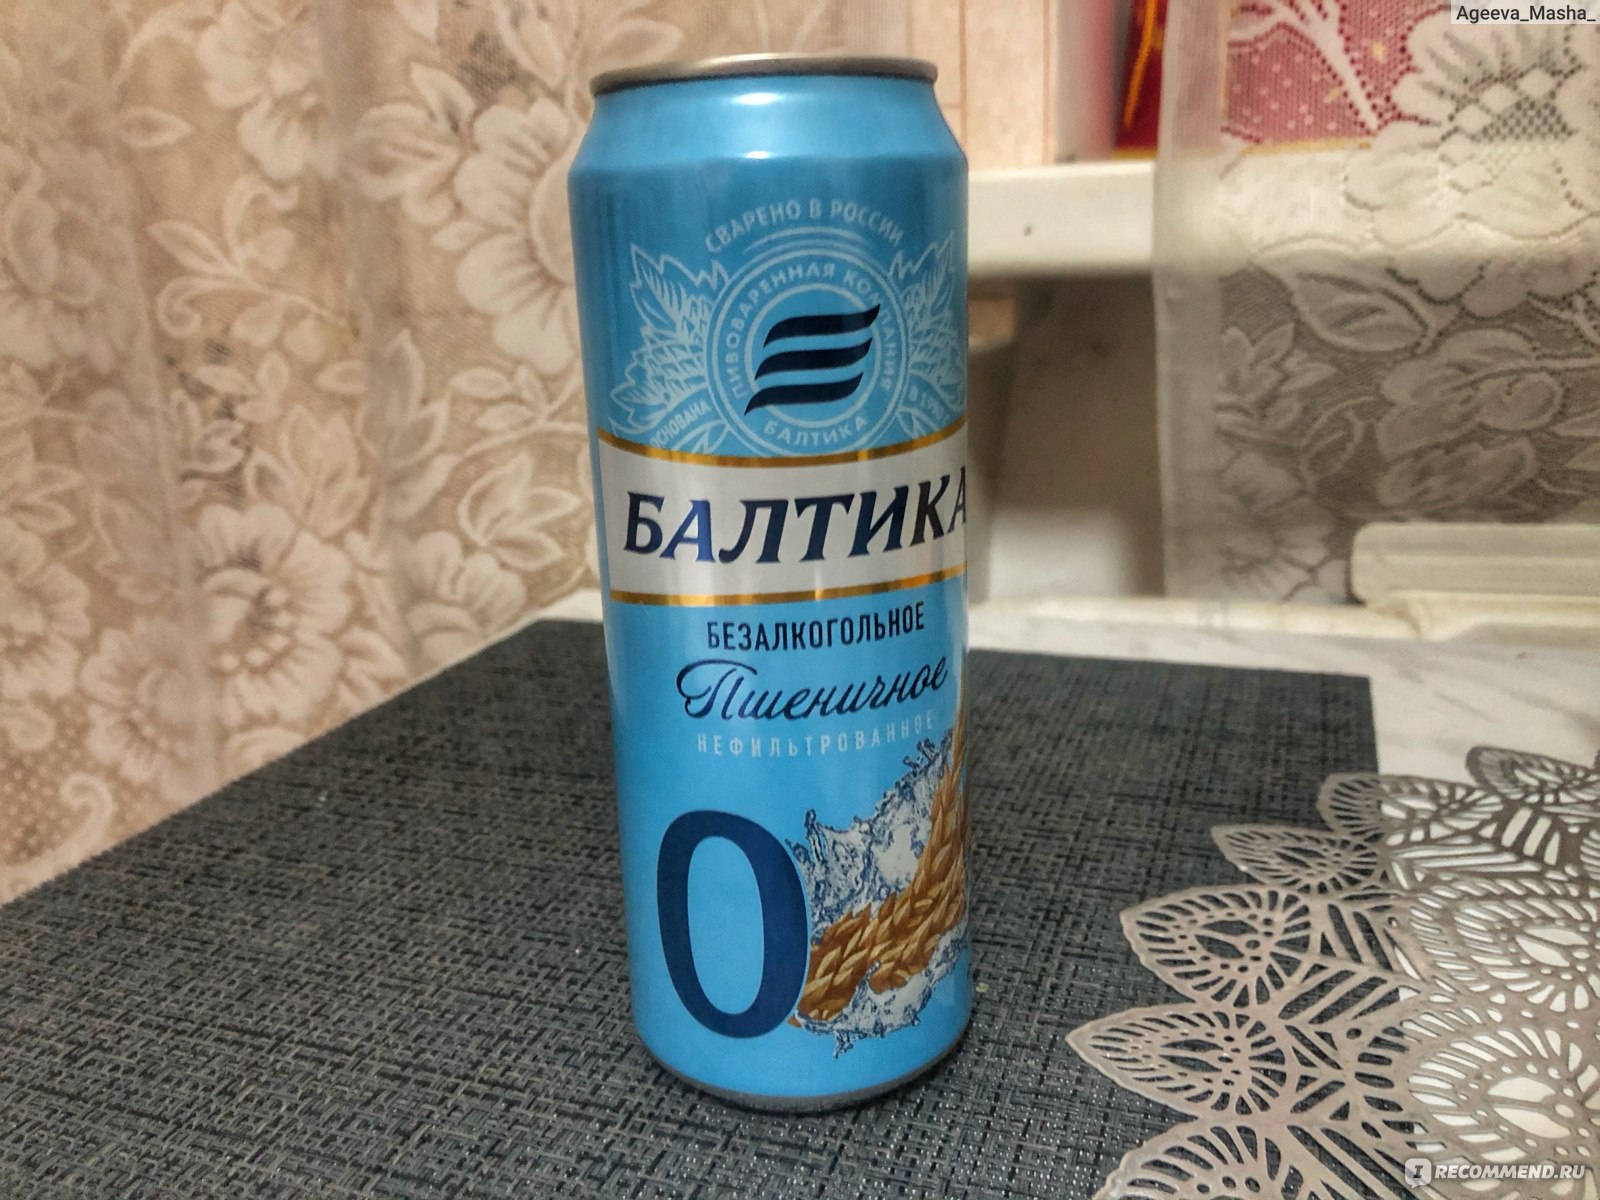 Балтика пшеничное нефильтрованное